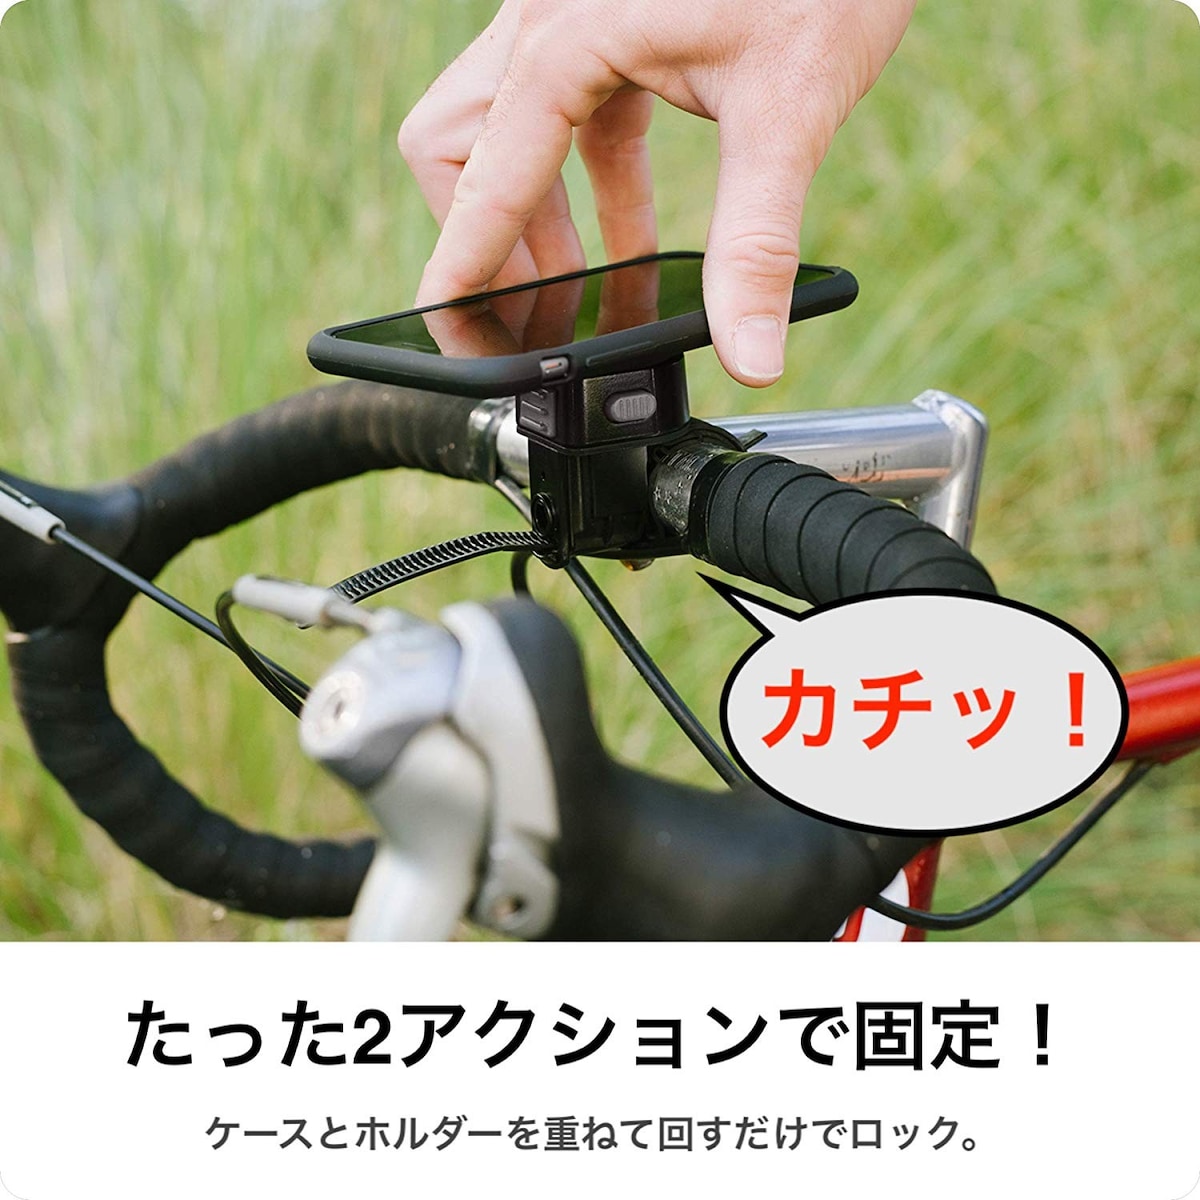  自転車スマホホルダー iPhone X XS 専用画像2 